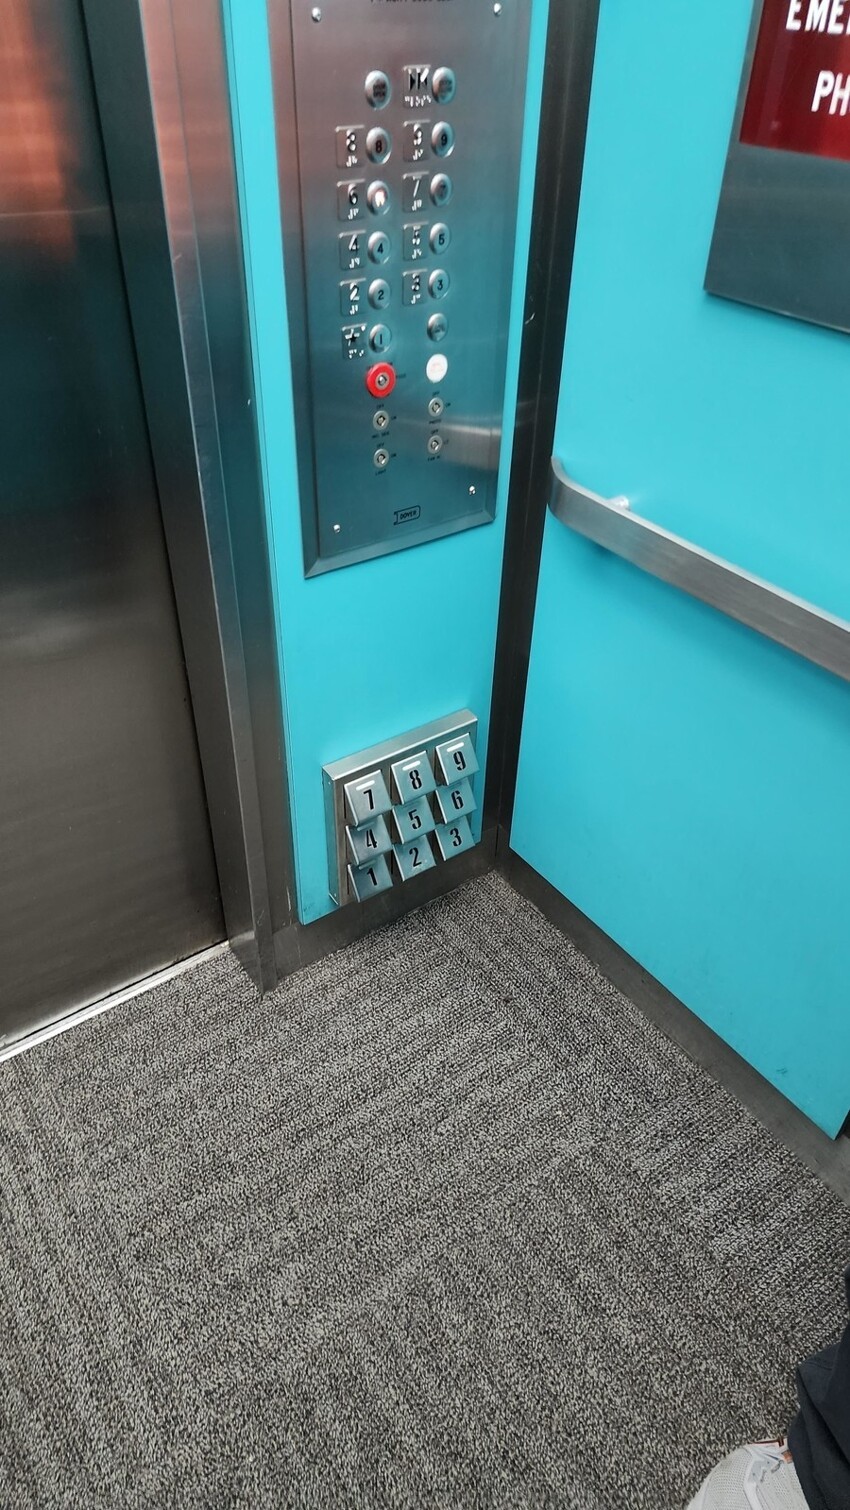 19. Существуют лифты, в которых кнопку этажа можно нажать ногой